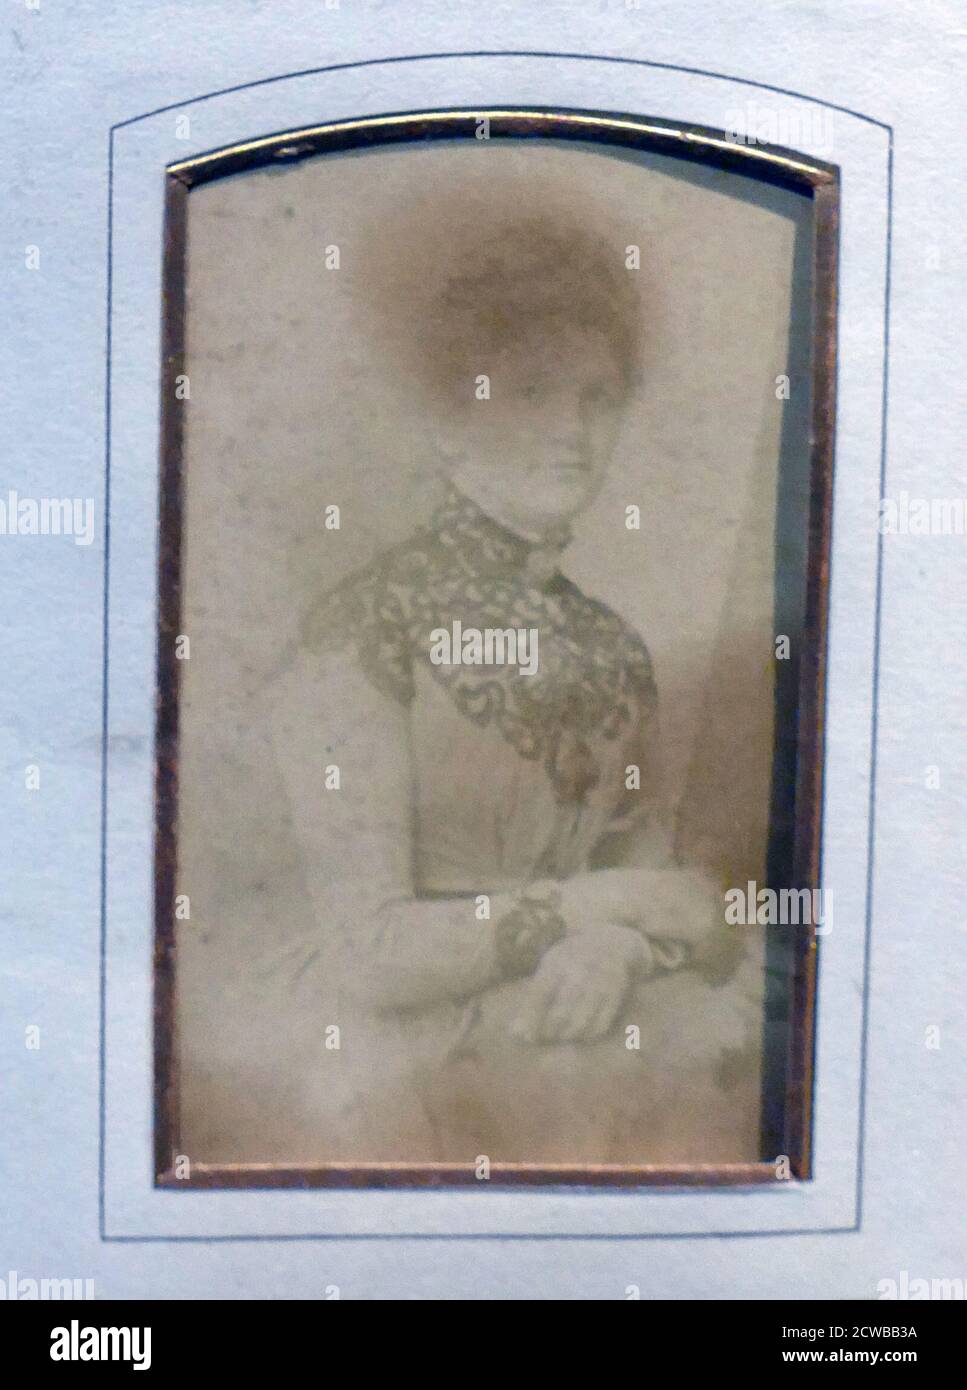 Photographie d'une femme, d'un album photo de famille anglais. Début du XXe siècle. 1900 Banque D'Images